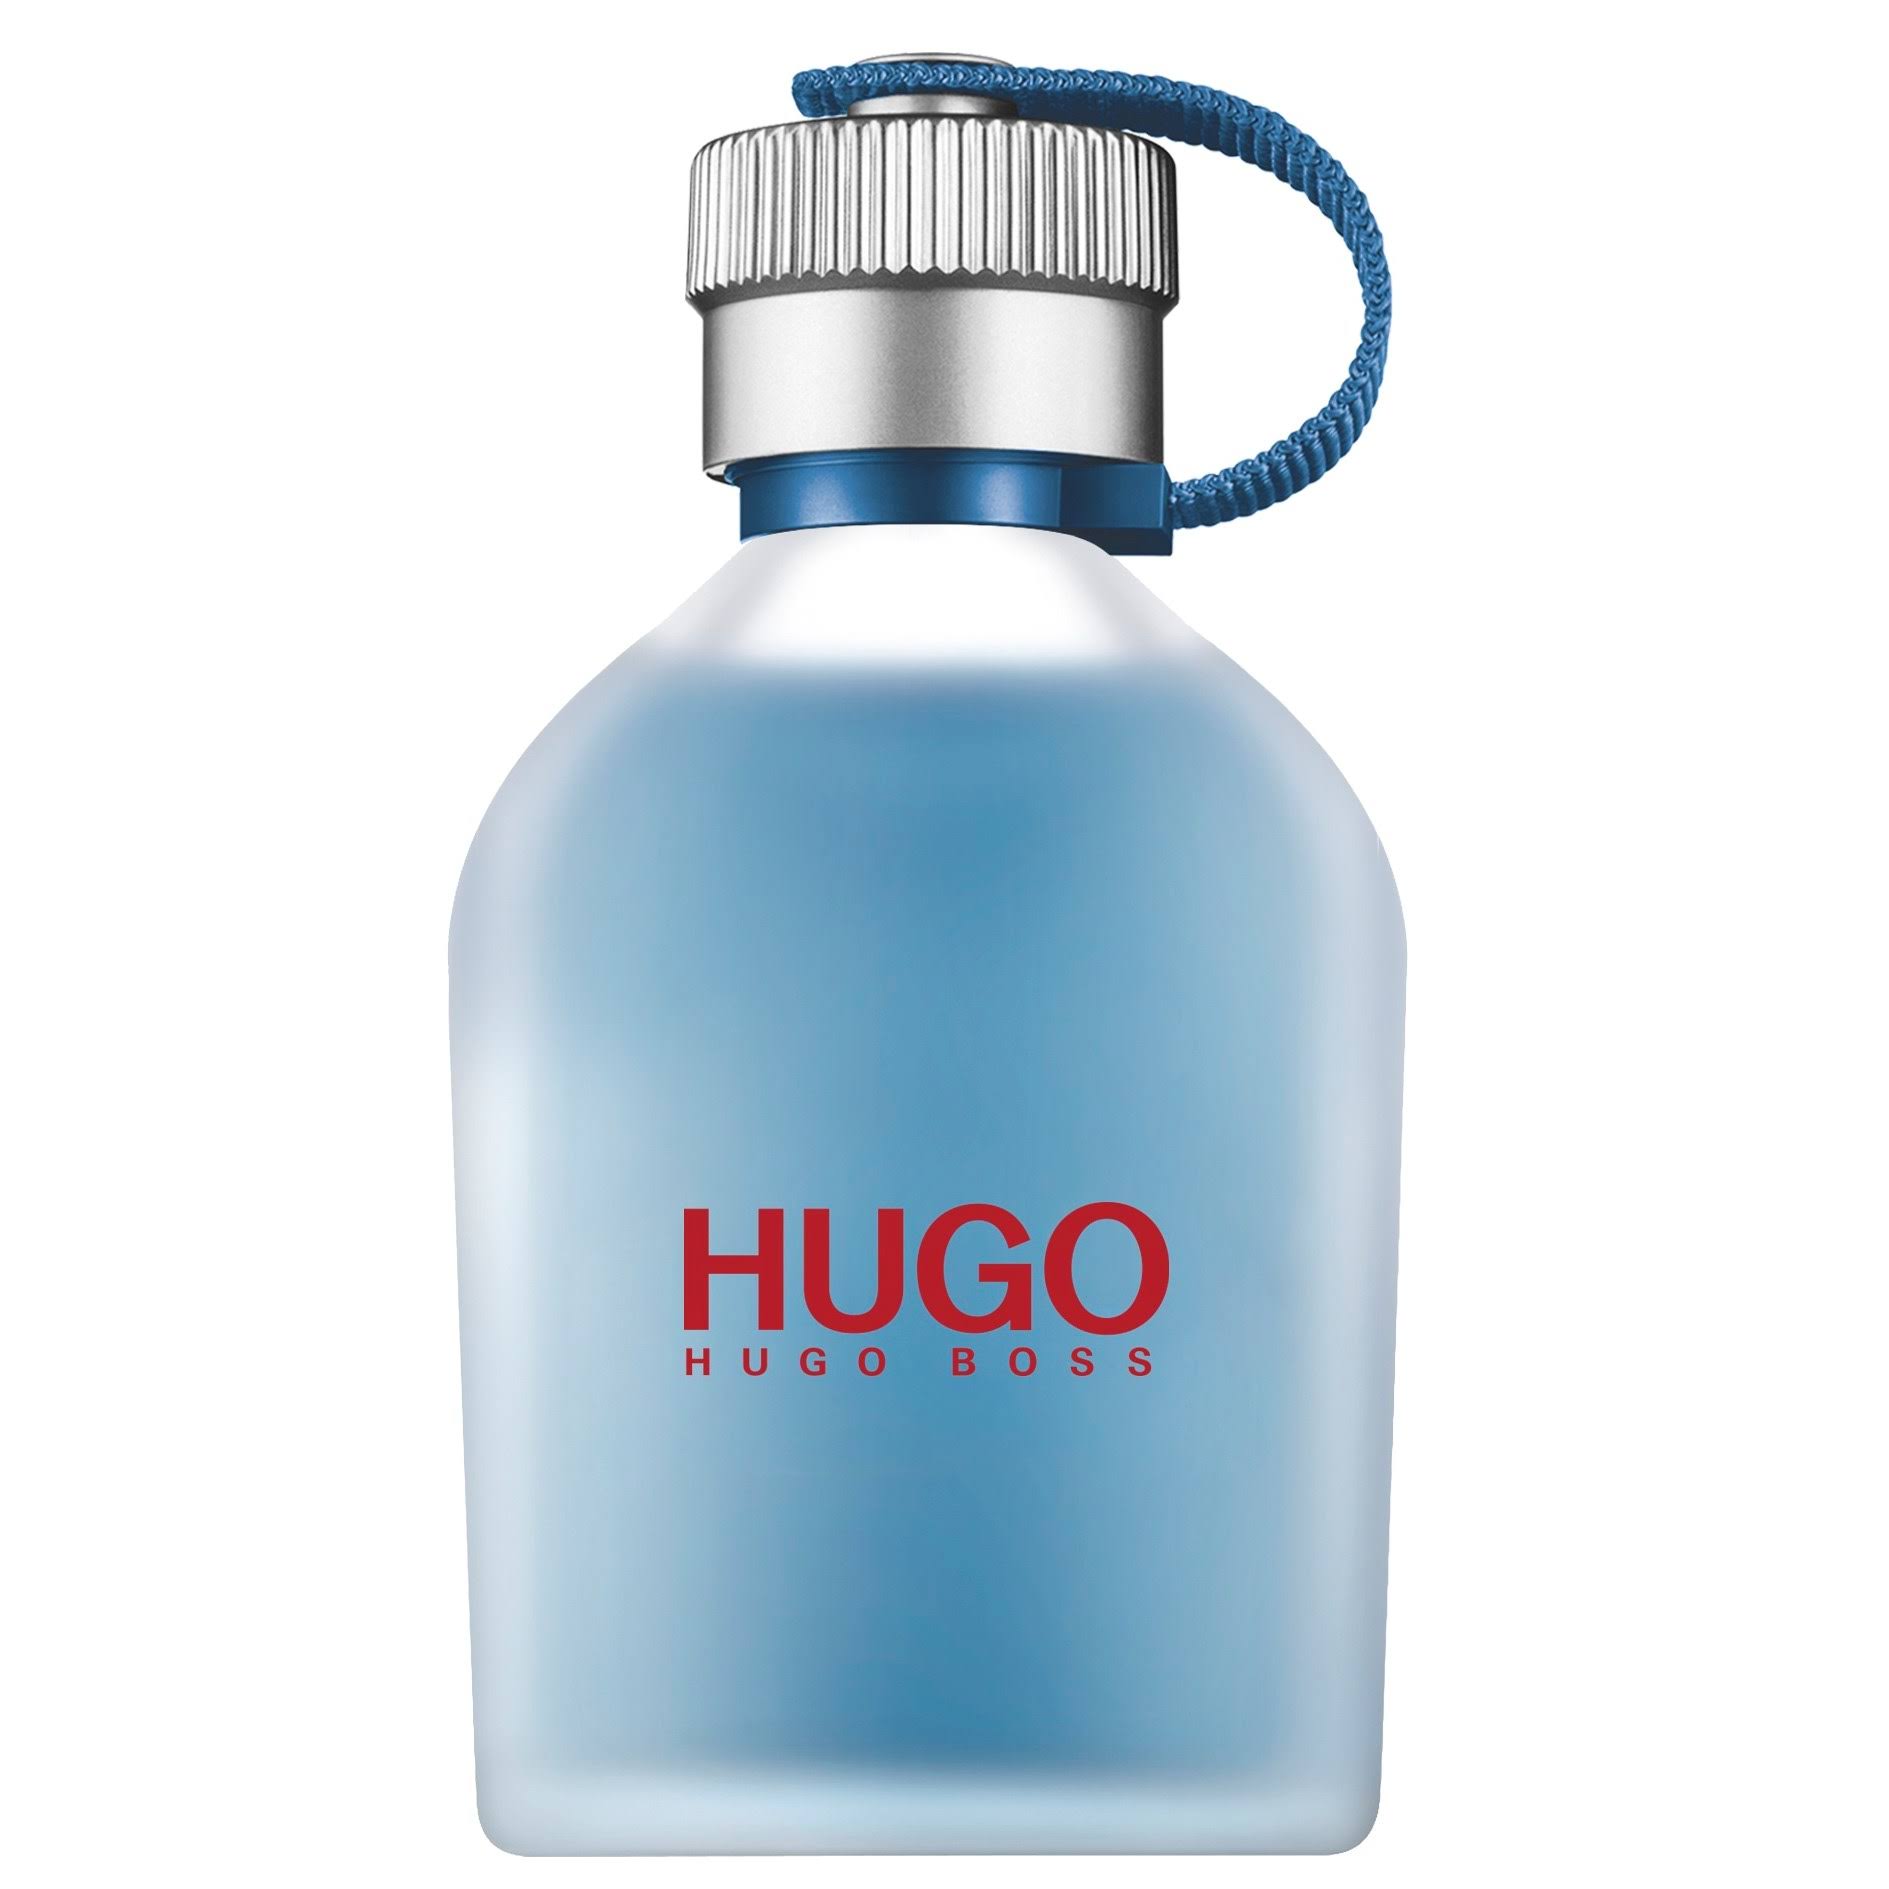 Hugo Boss - Hugo Now - Eau de Toilette Spray 75ml